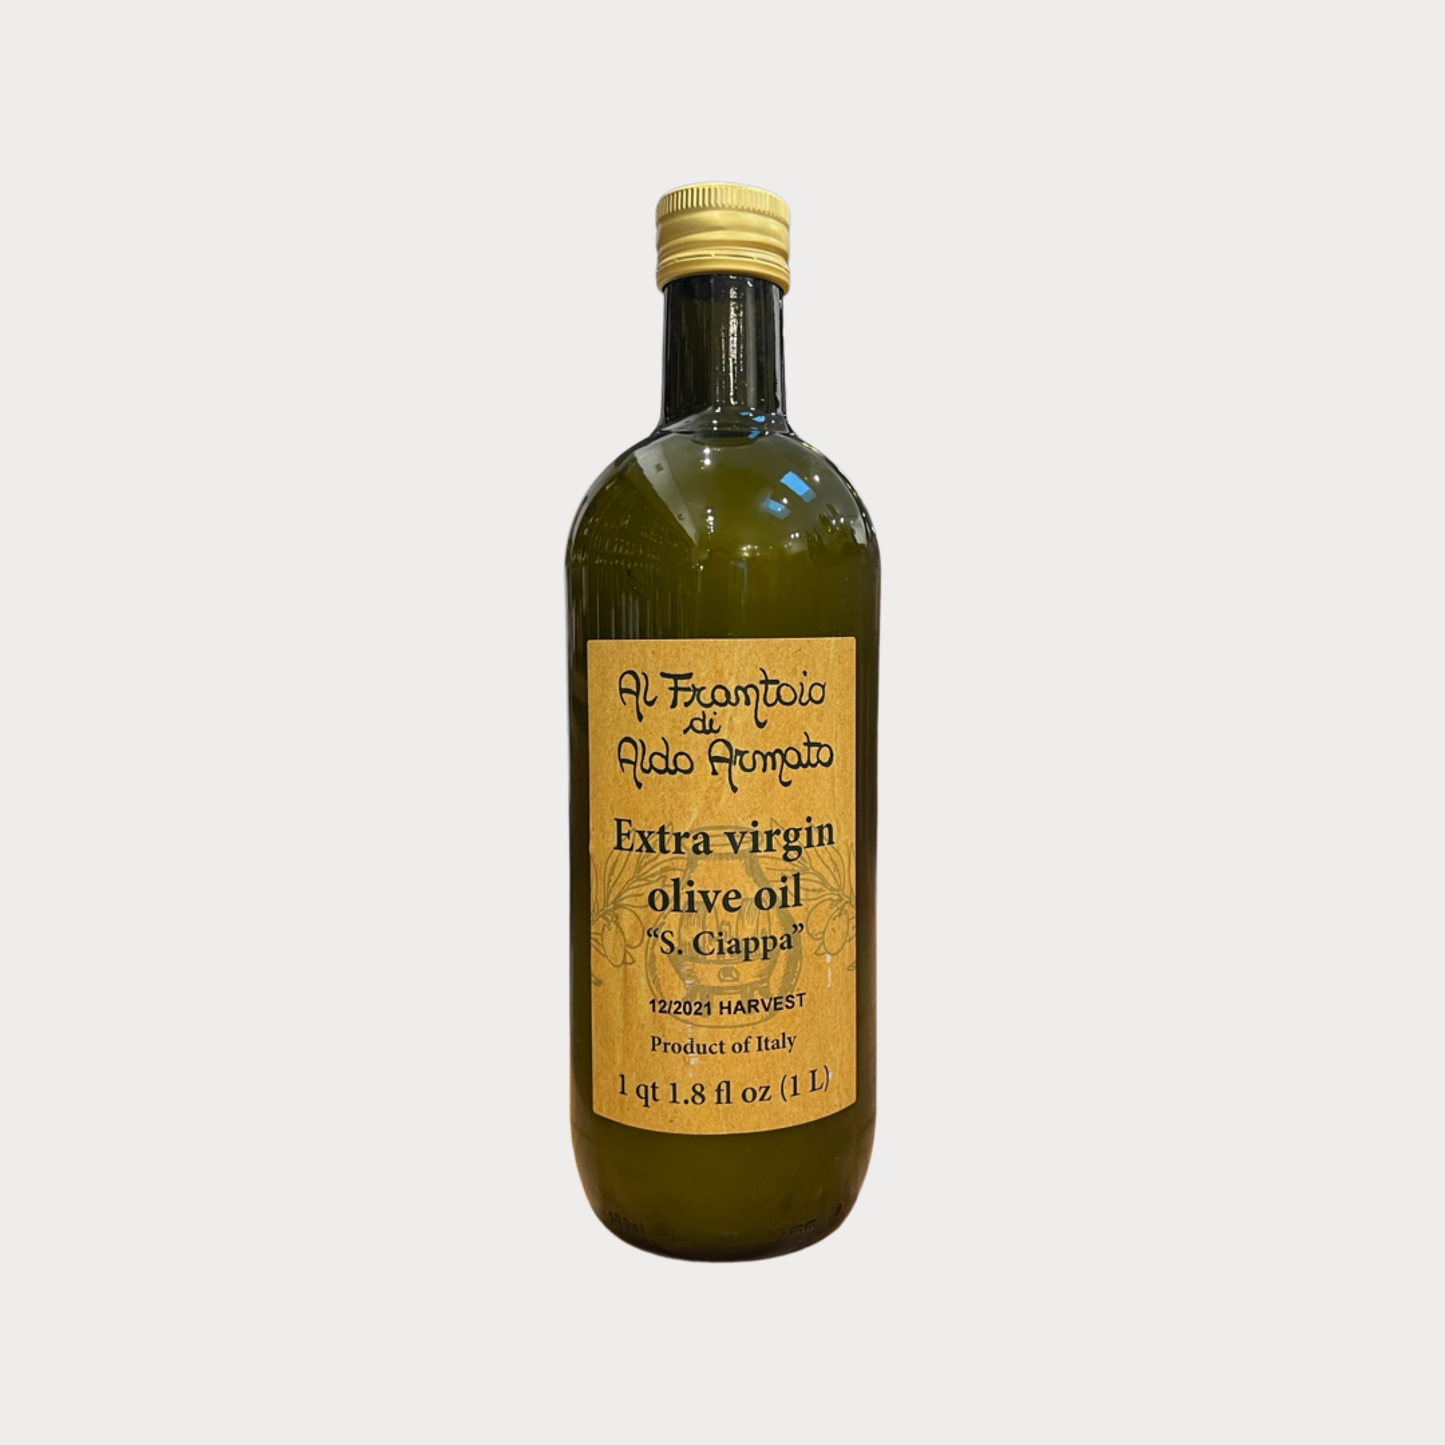 Al Frantoio di Aldo Armato "S.Ciappa" Extra Virgin Olive Oil